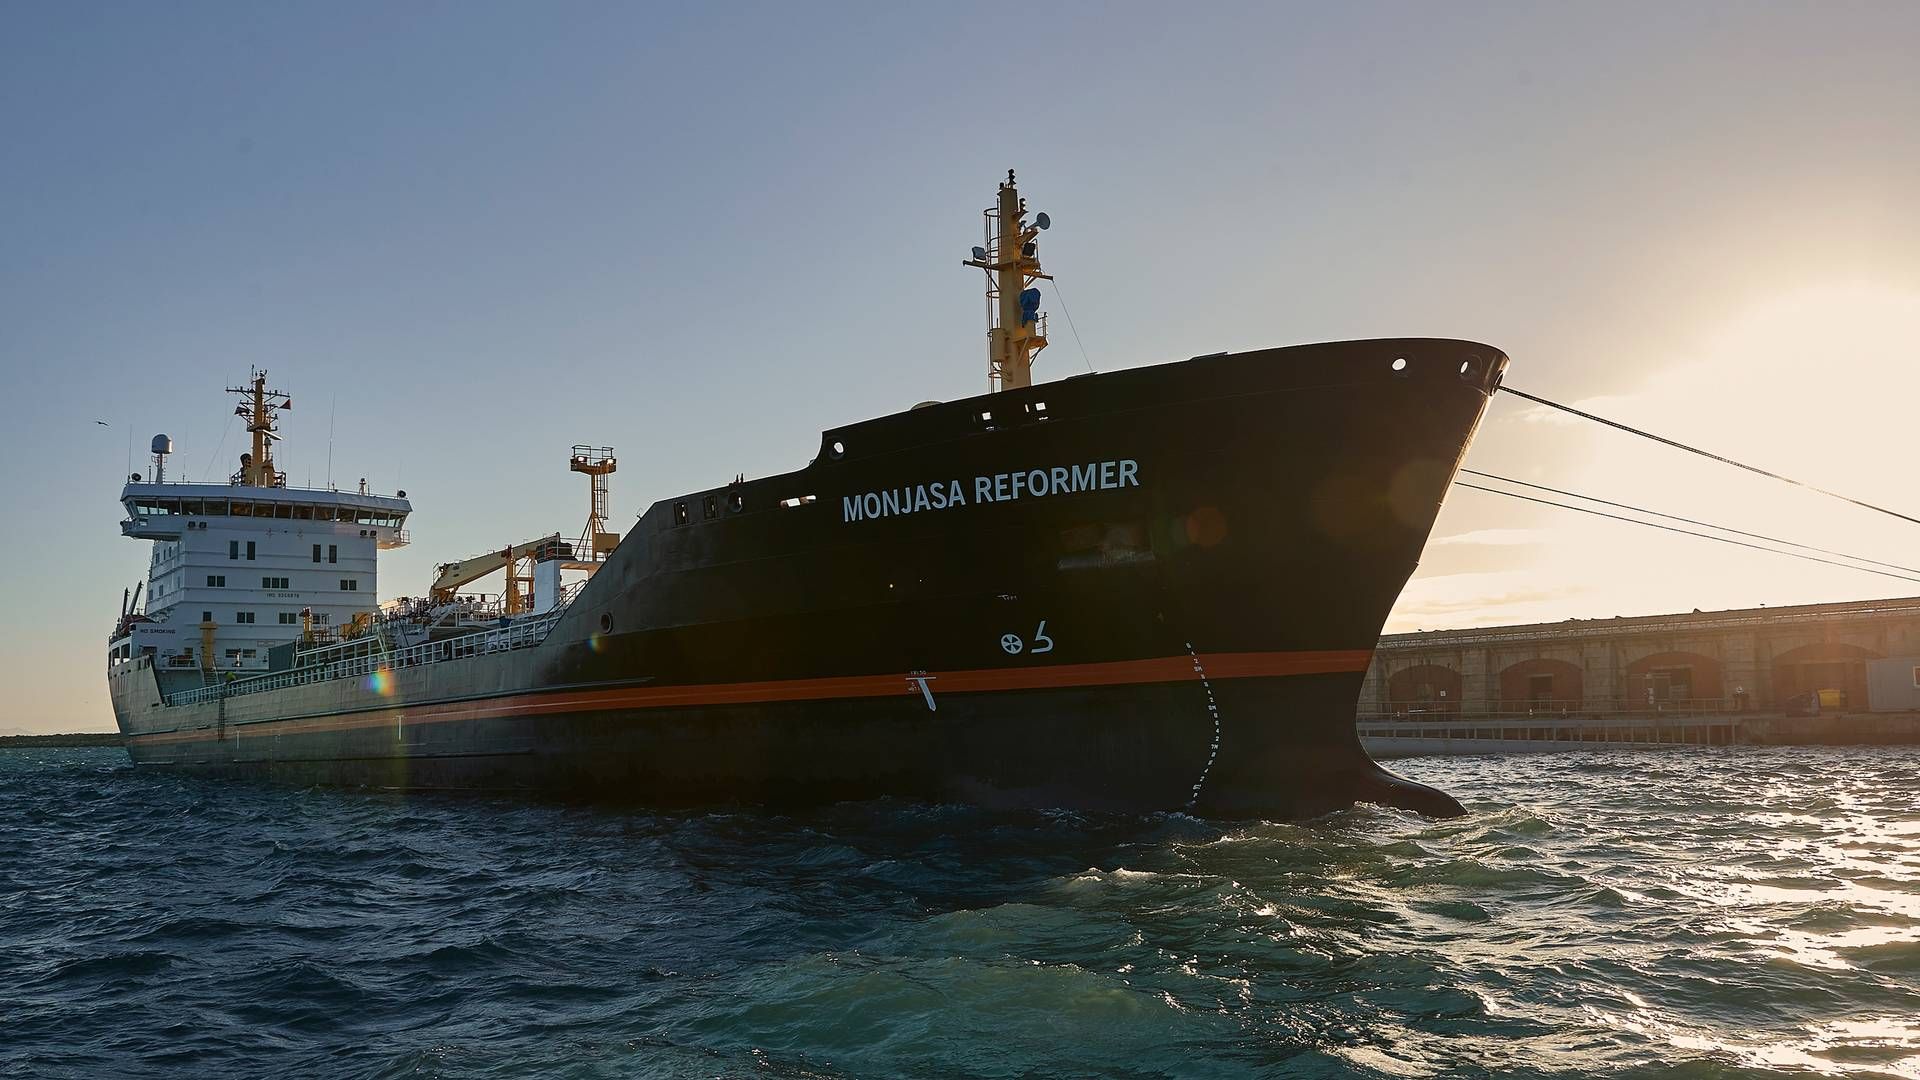 Tankskibet Monjasa Reformer blev angrebet 25. marts. Det er ejet af danske Monjasa, men sejler under liberisk flag, | Foto: Monjasa